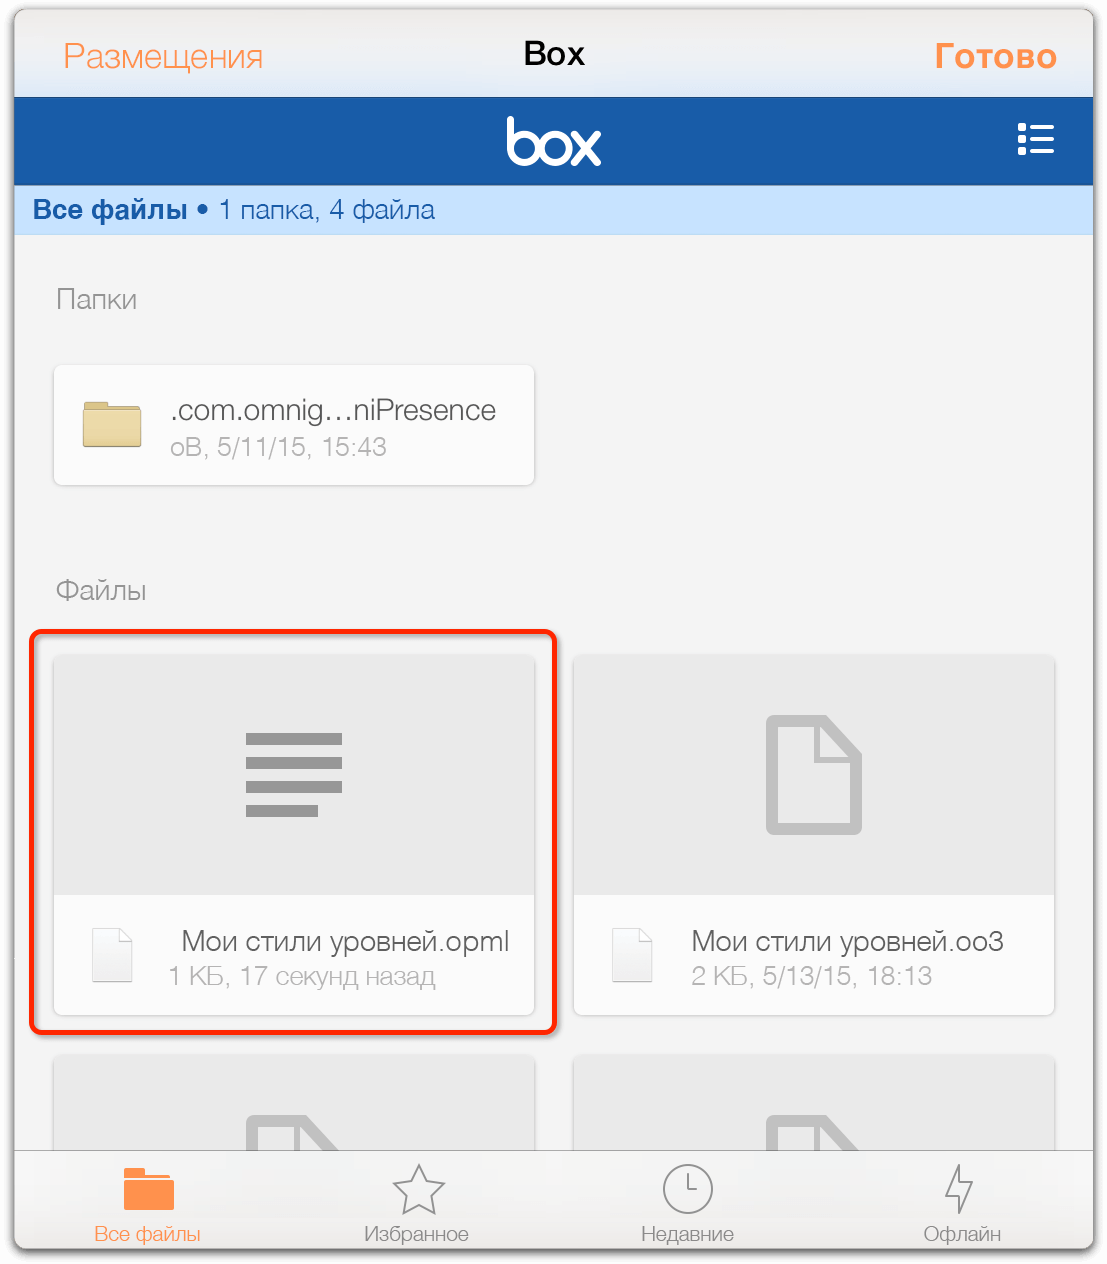 В окне отображаются файлы, хранящиеся в службе Box, в том числе OPML-файл